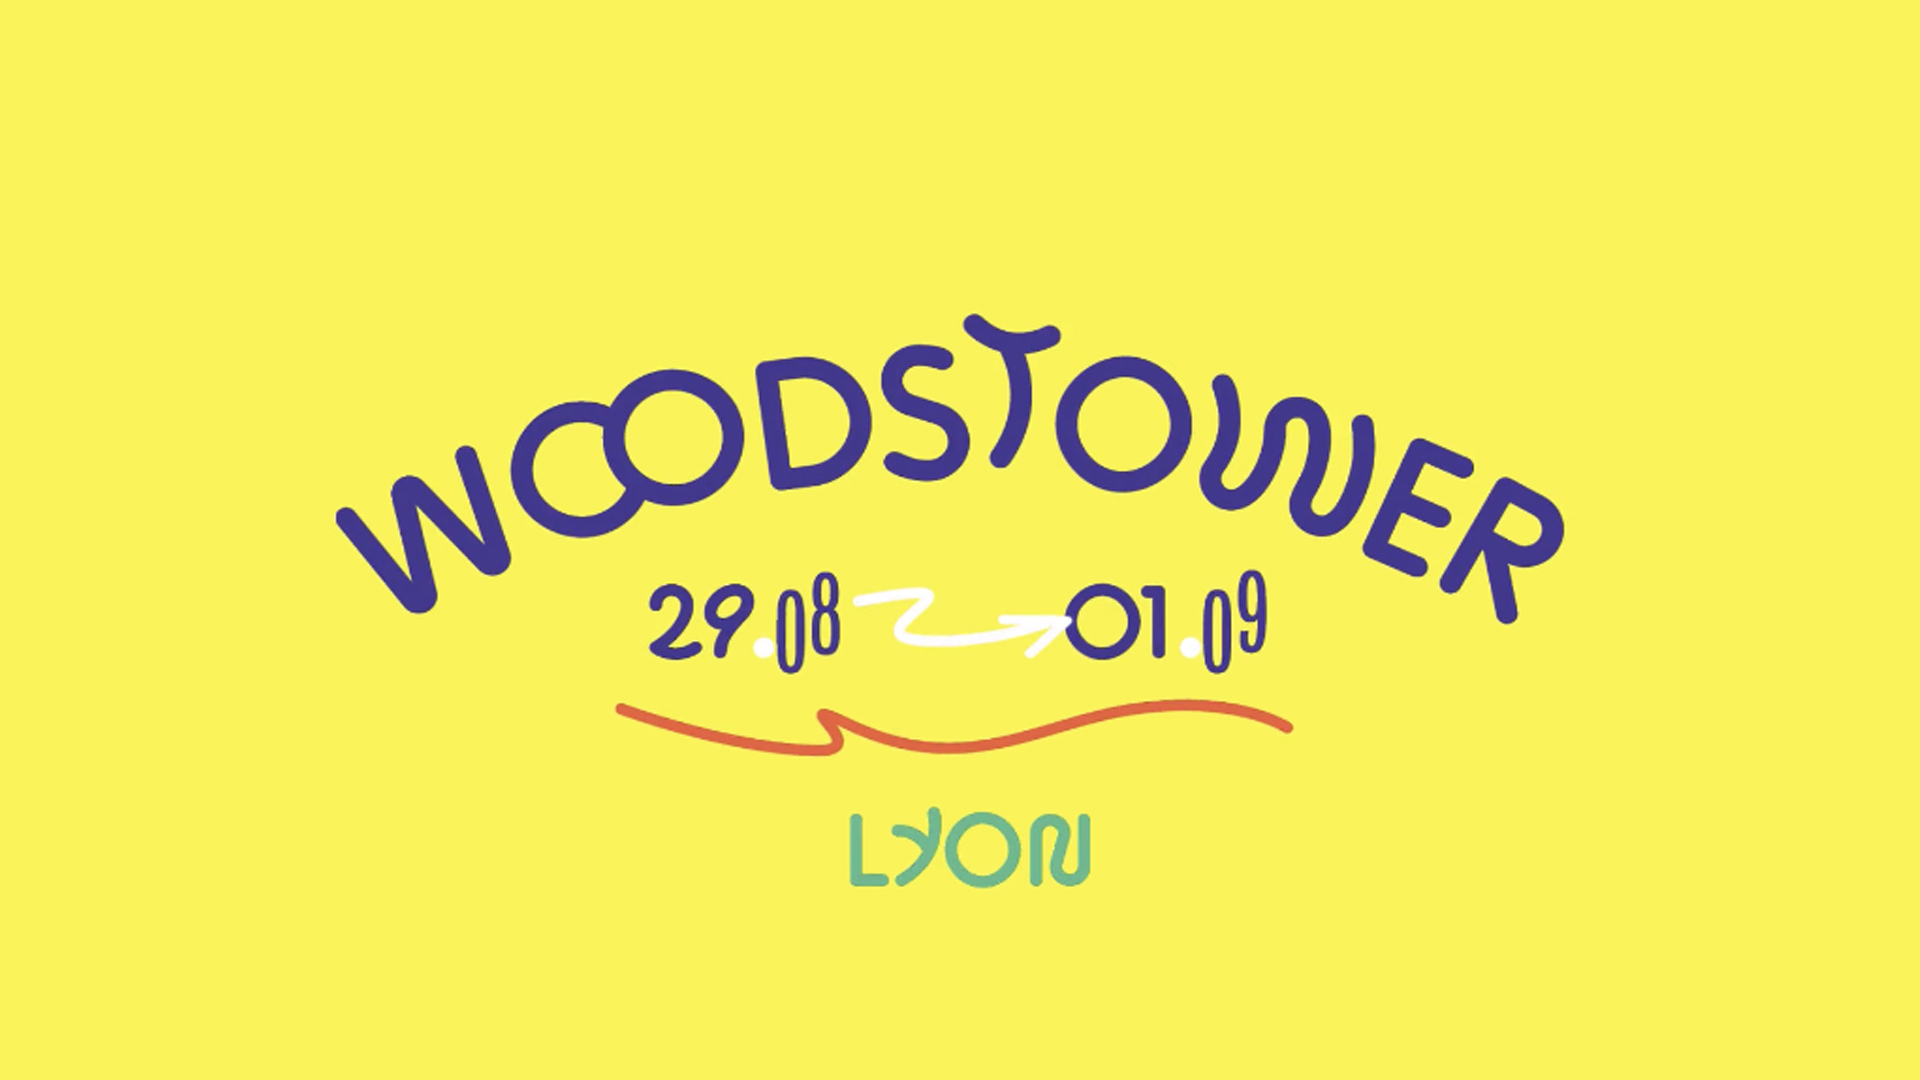 Woodstower / Teaser festival